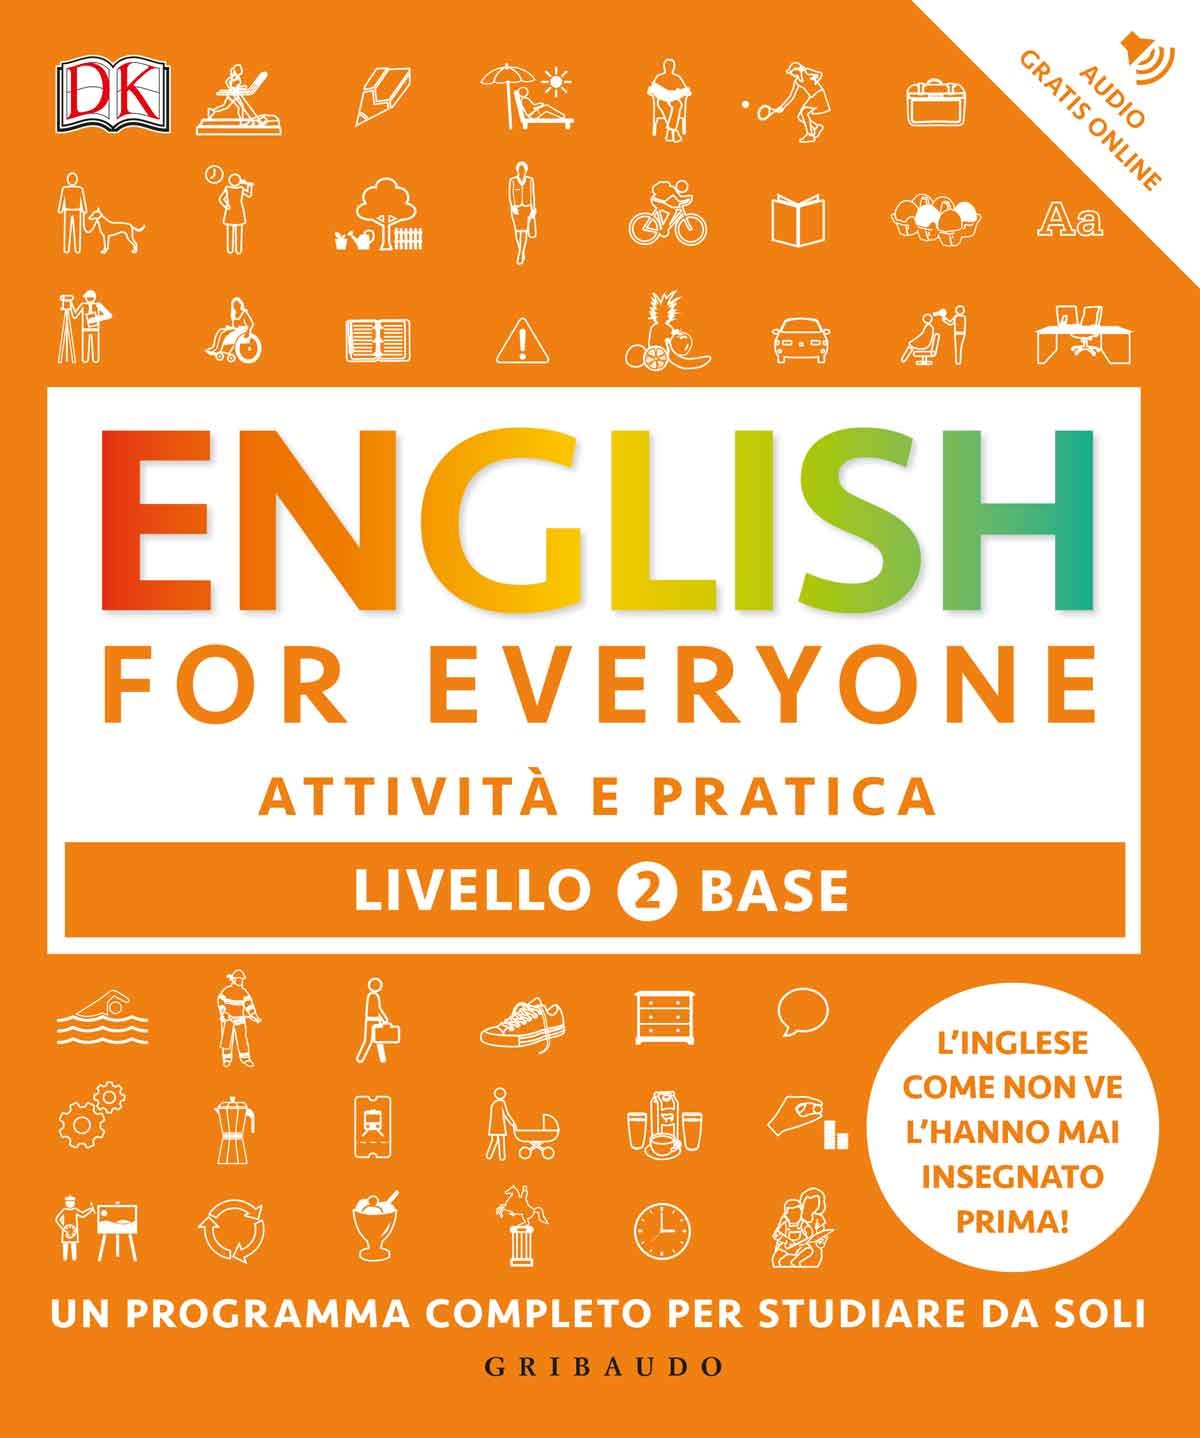 English for everyone - Livello 2 base - Attività e pratica